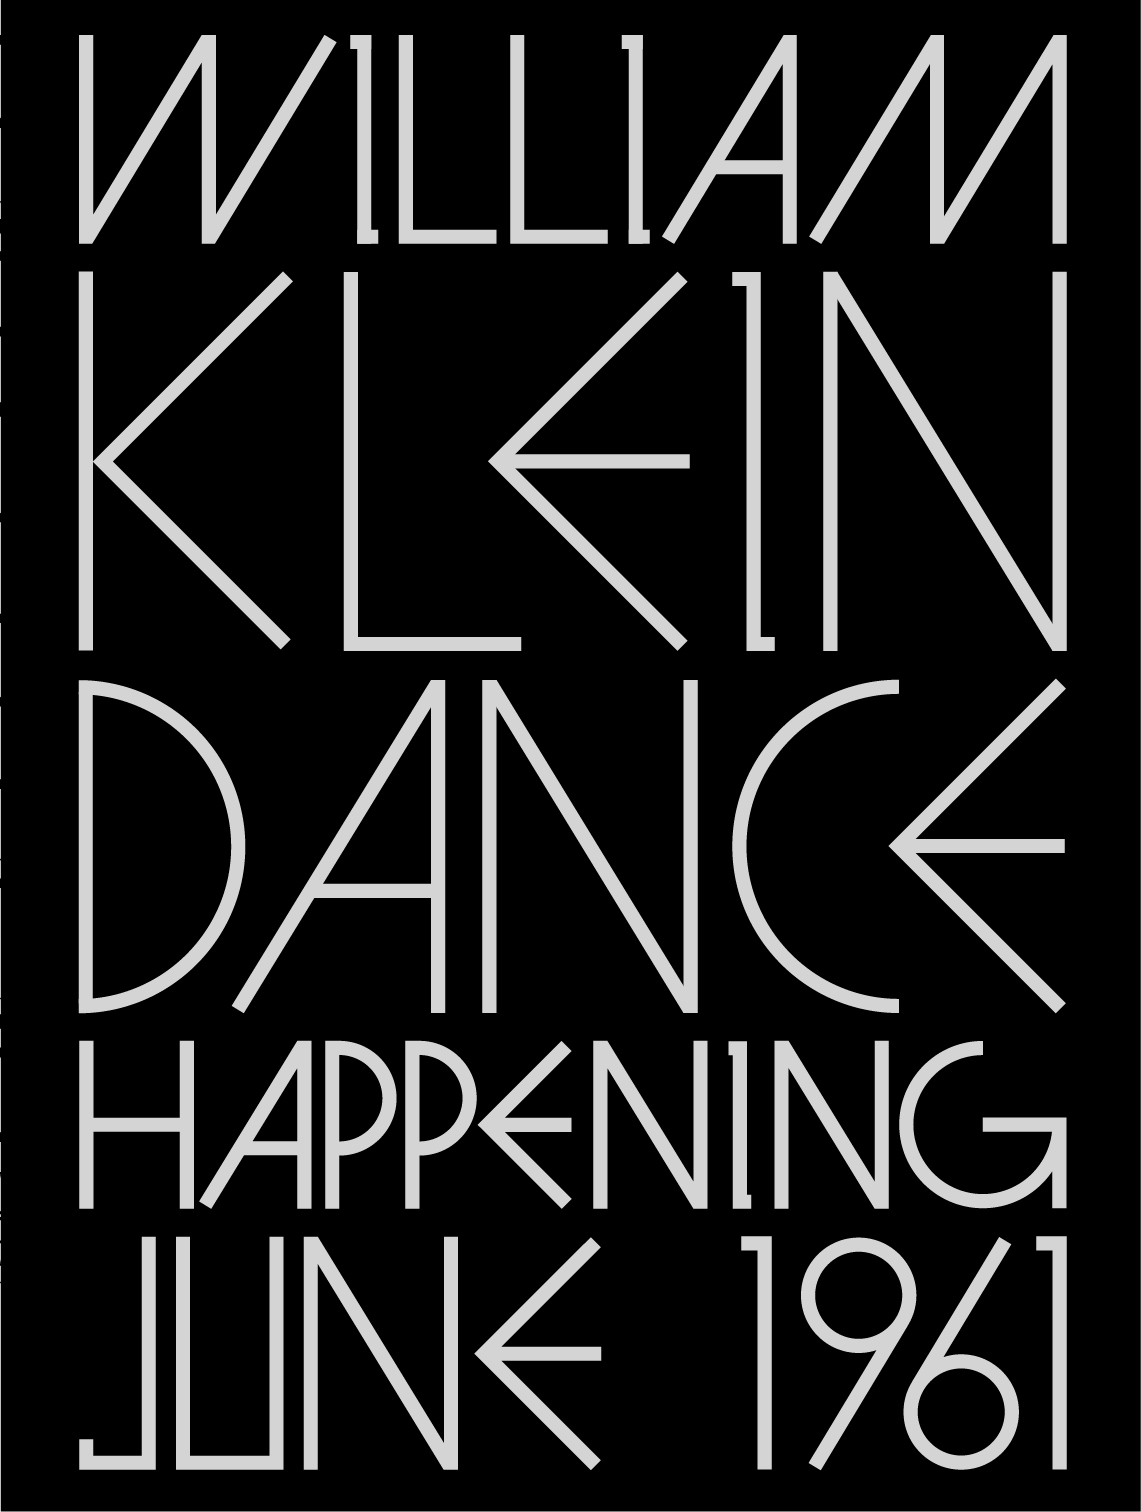 ウィリアム・クライン写真集 『ダンス・ハプニング 1961年6月』